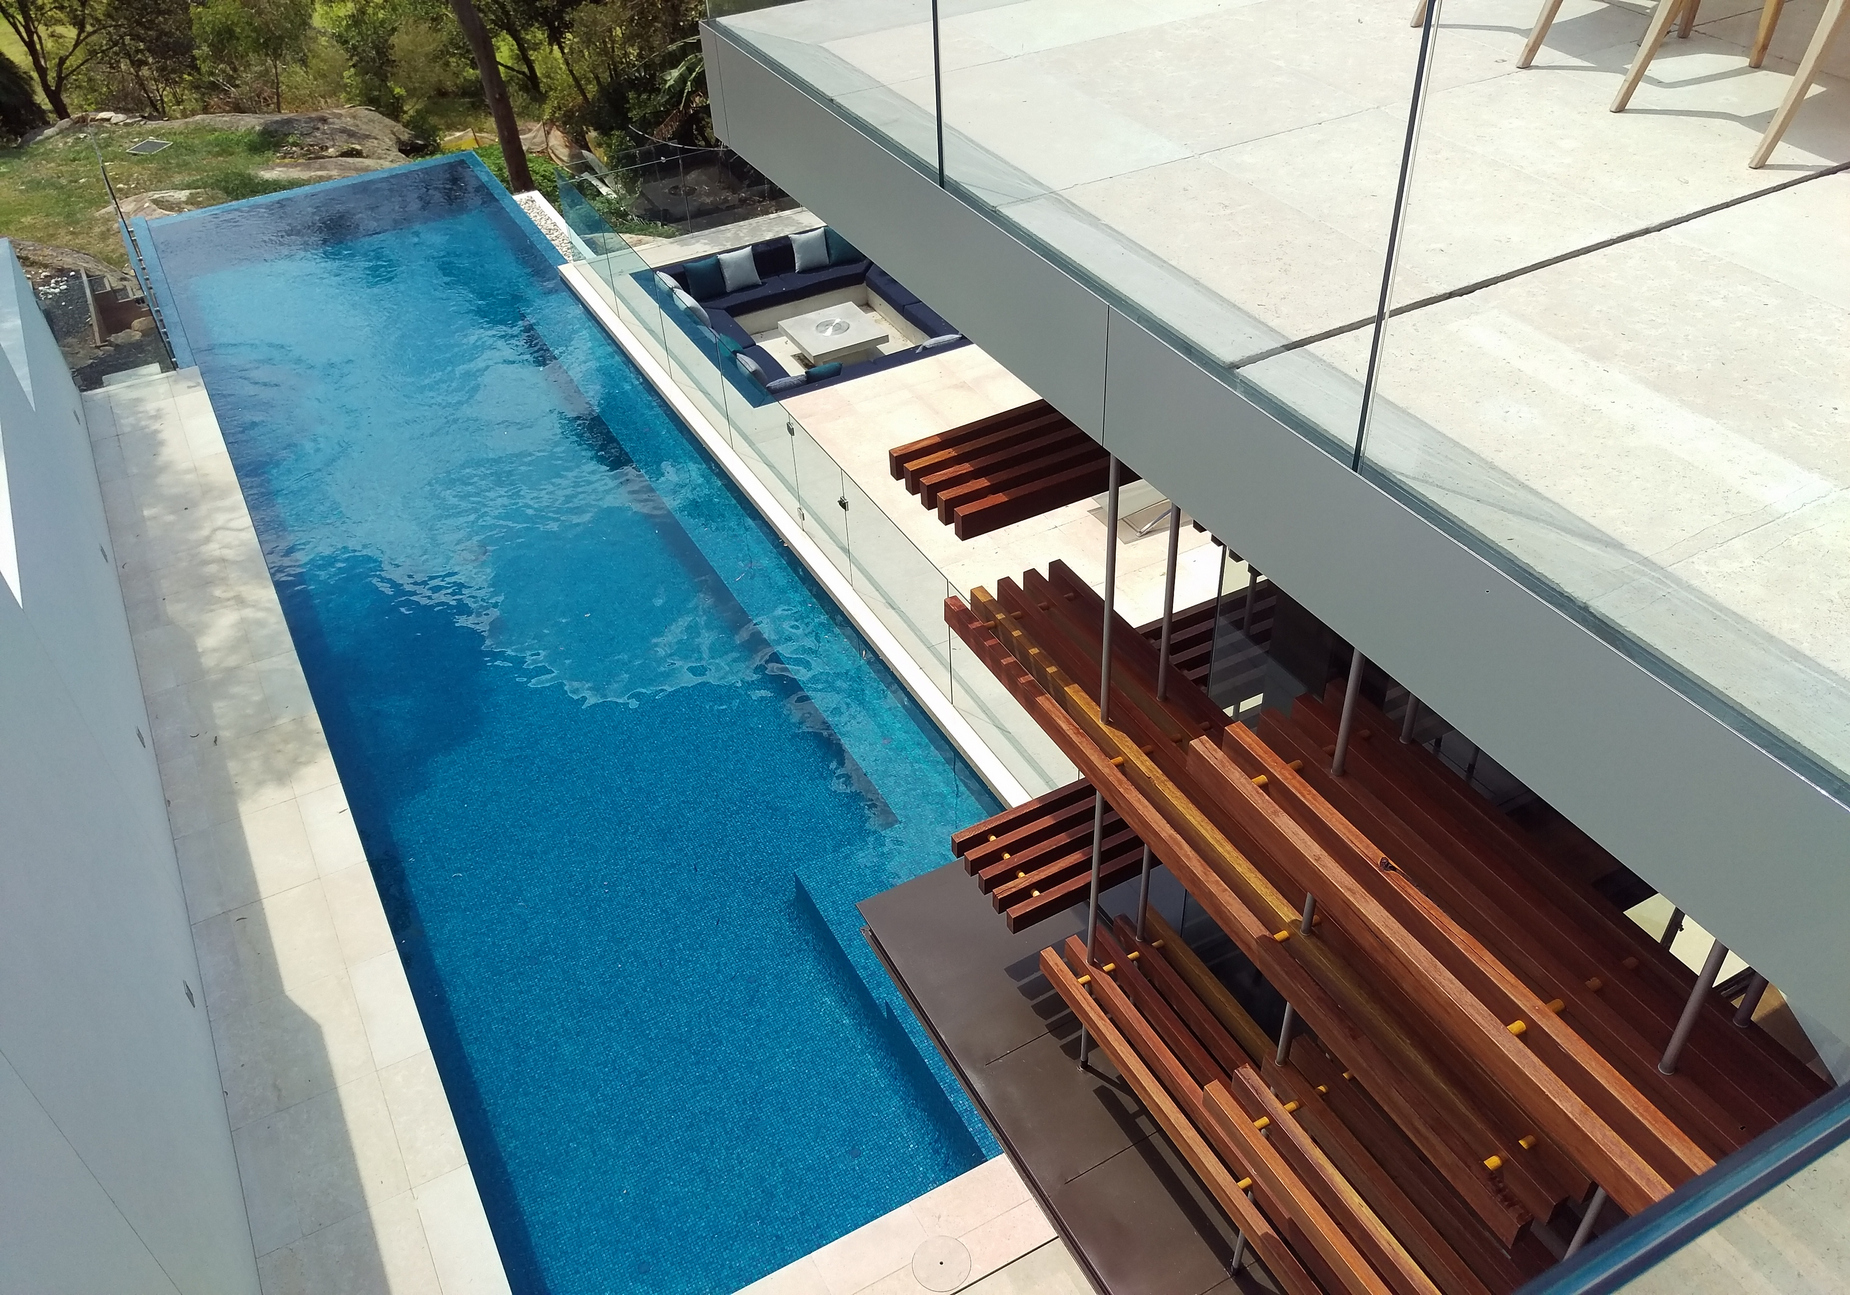 Modern swimming pool in the hillside house designed by Rolf Ockert